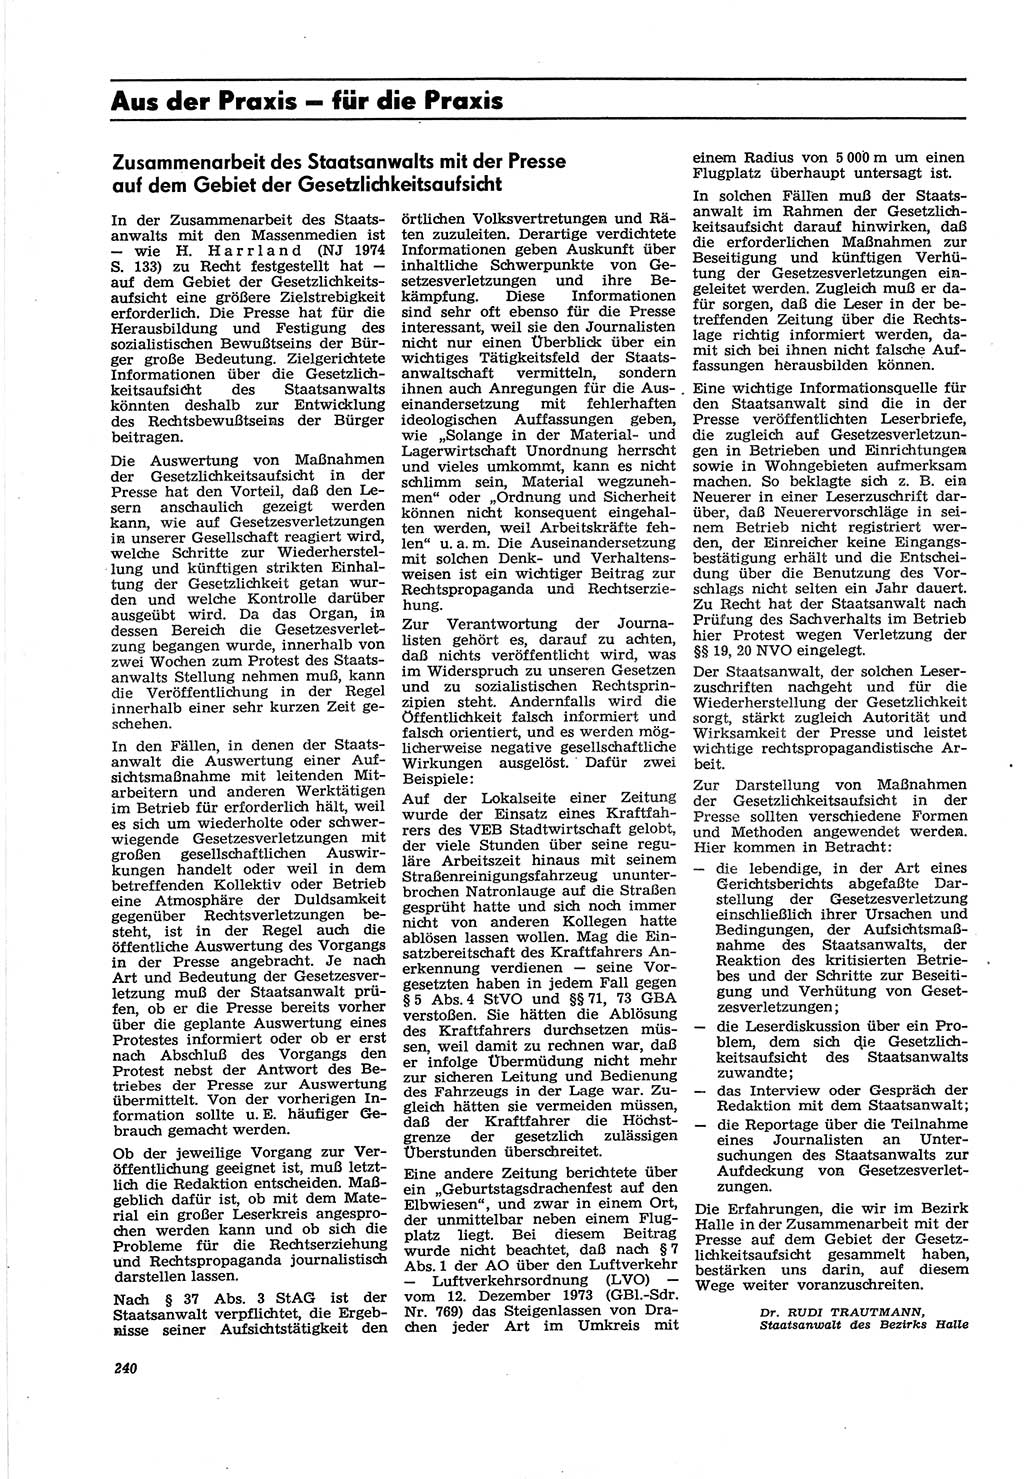 Neue Justiz (NJ), Zeitschrift für Recht und Rechtswissenschaft [Deutsche Demokratische Republik (DDR)], 30. Jahrgang 1976, Seite 240 (NJ DDR 1976, S. 240)